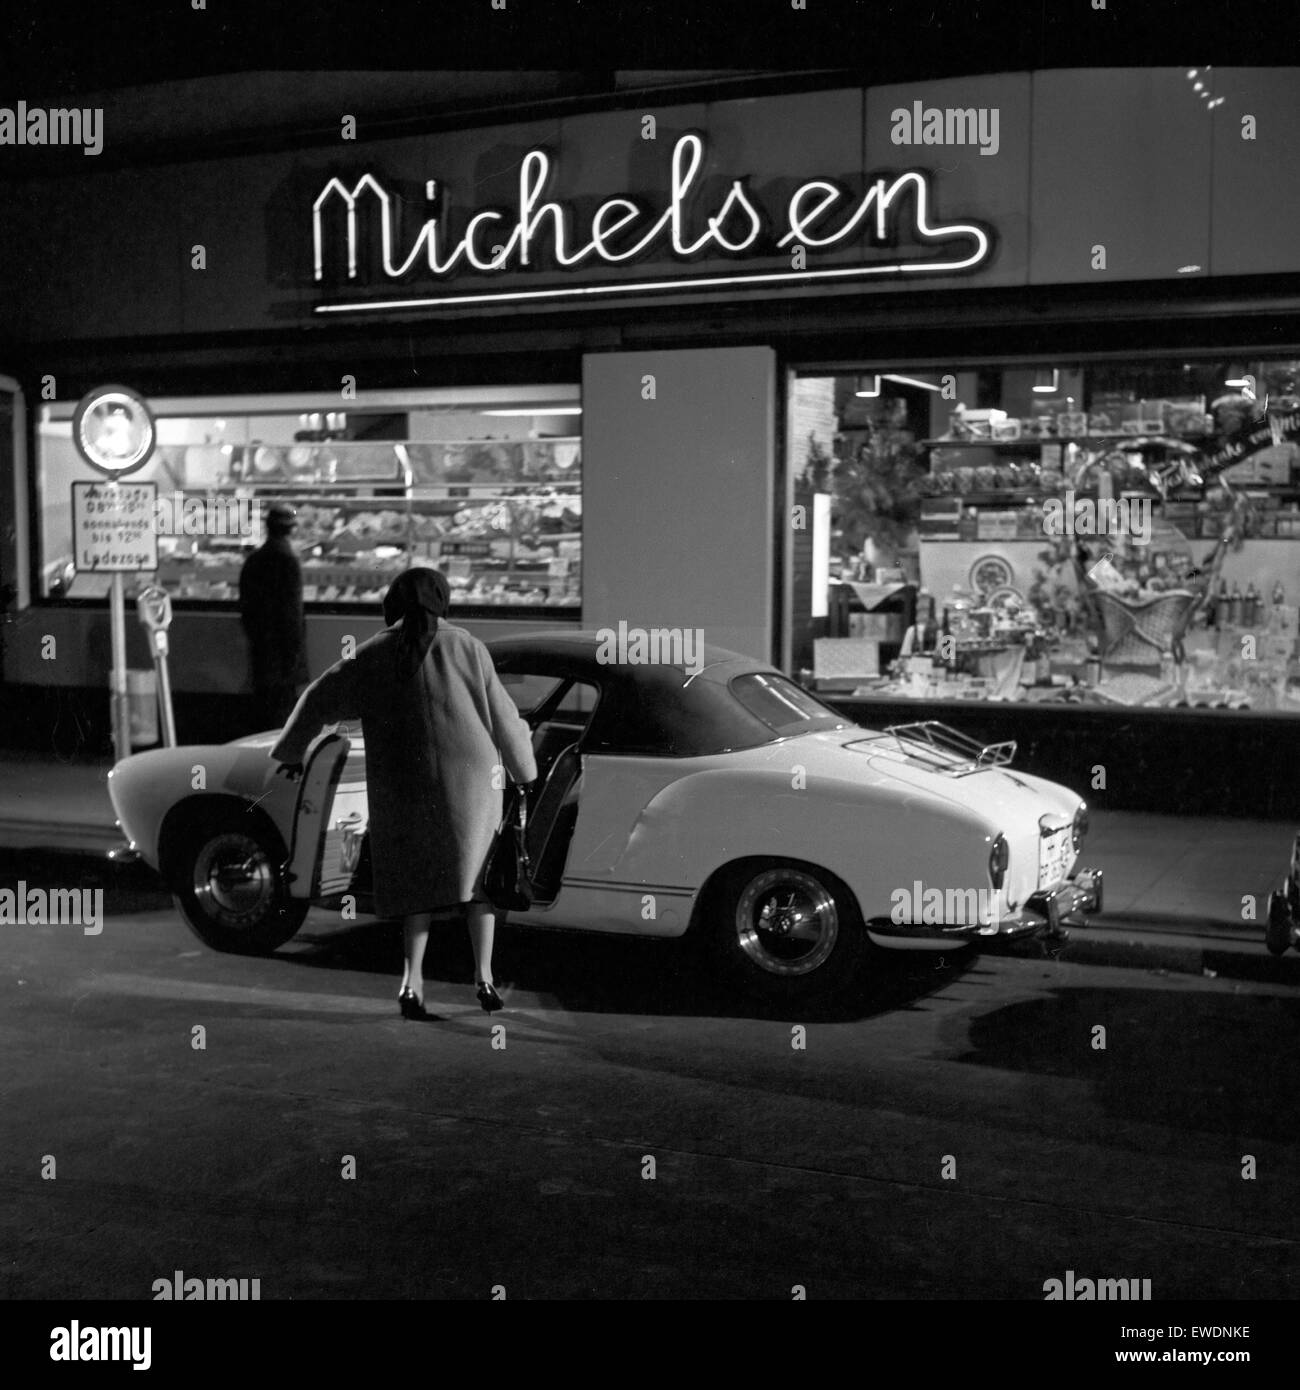 Wilhelmsburger Freitag, Sozialdrama, Deutschland 1964, Regie: Egon Monk, Szenenfoto Karmann Ghia vor dem Ladenlokal von Michelsen. Stock Photo